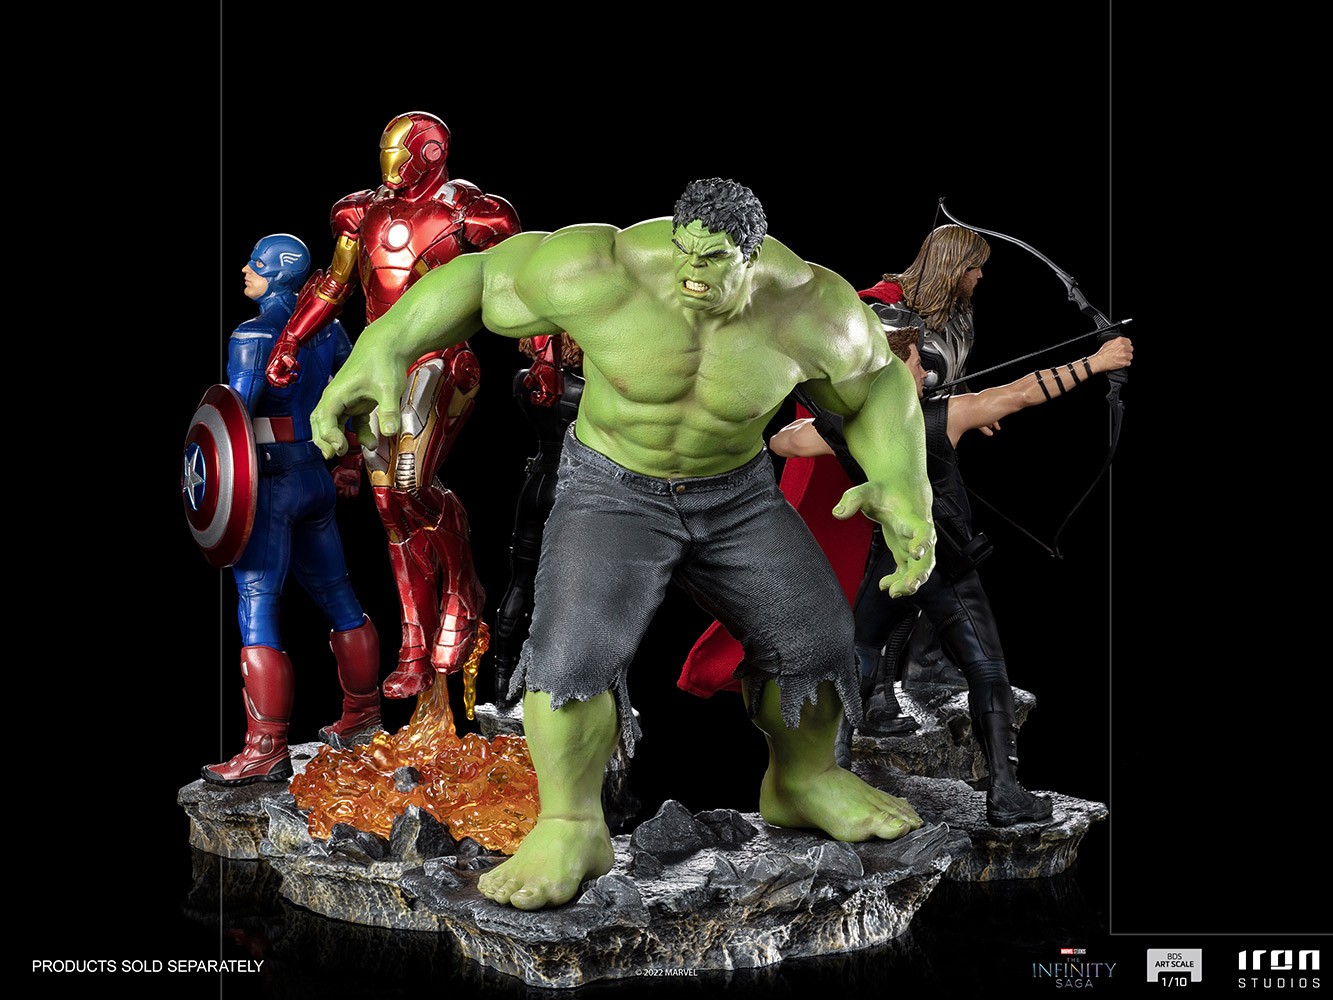 Hulk (Battle of NY)